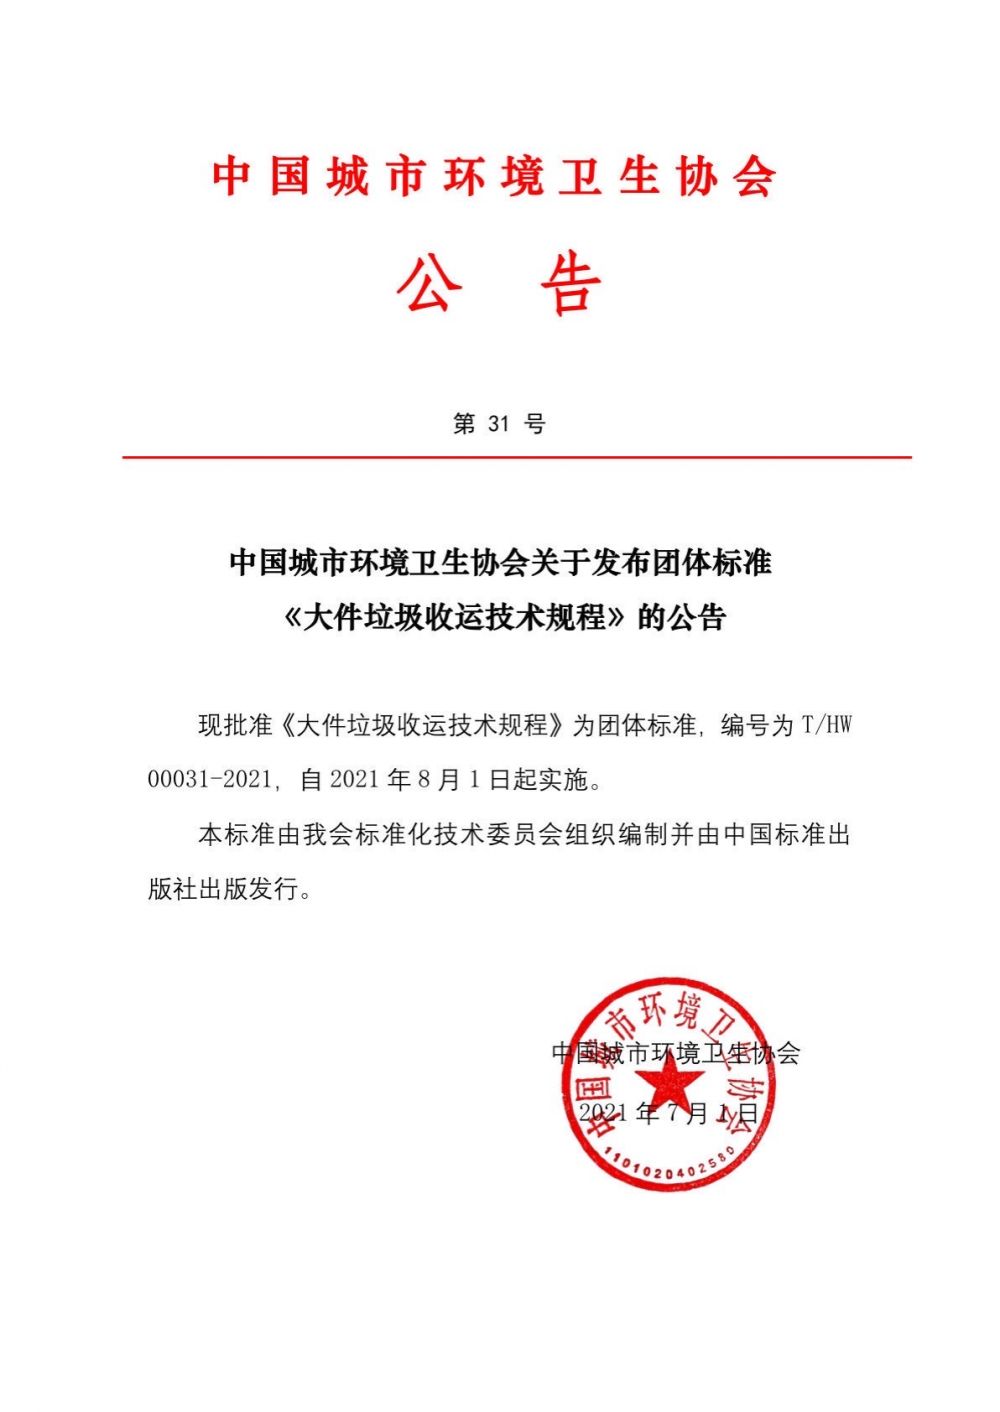 公告第31号中国城市环境卫生协会关于发布团体标准《大件垃圾收运技术规程》的公告.jpg